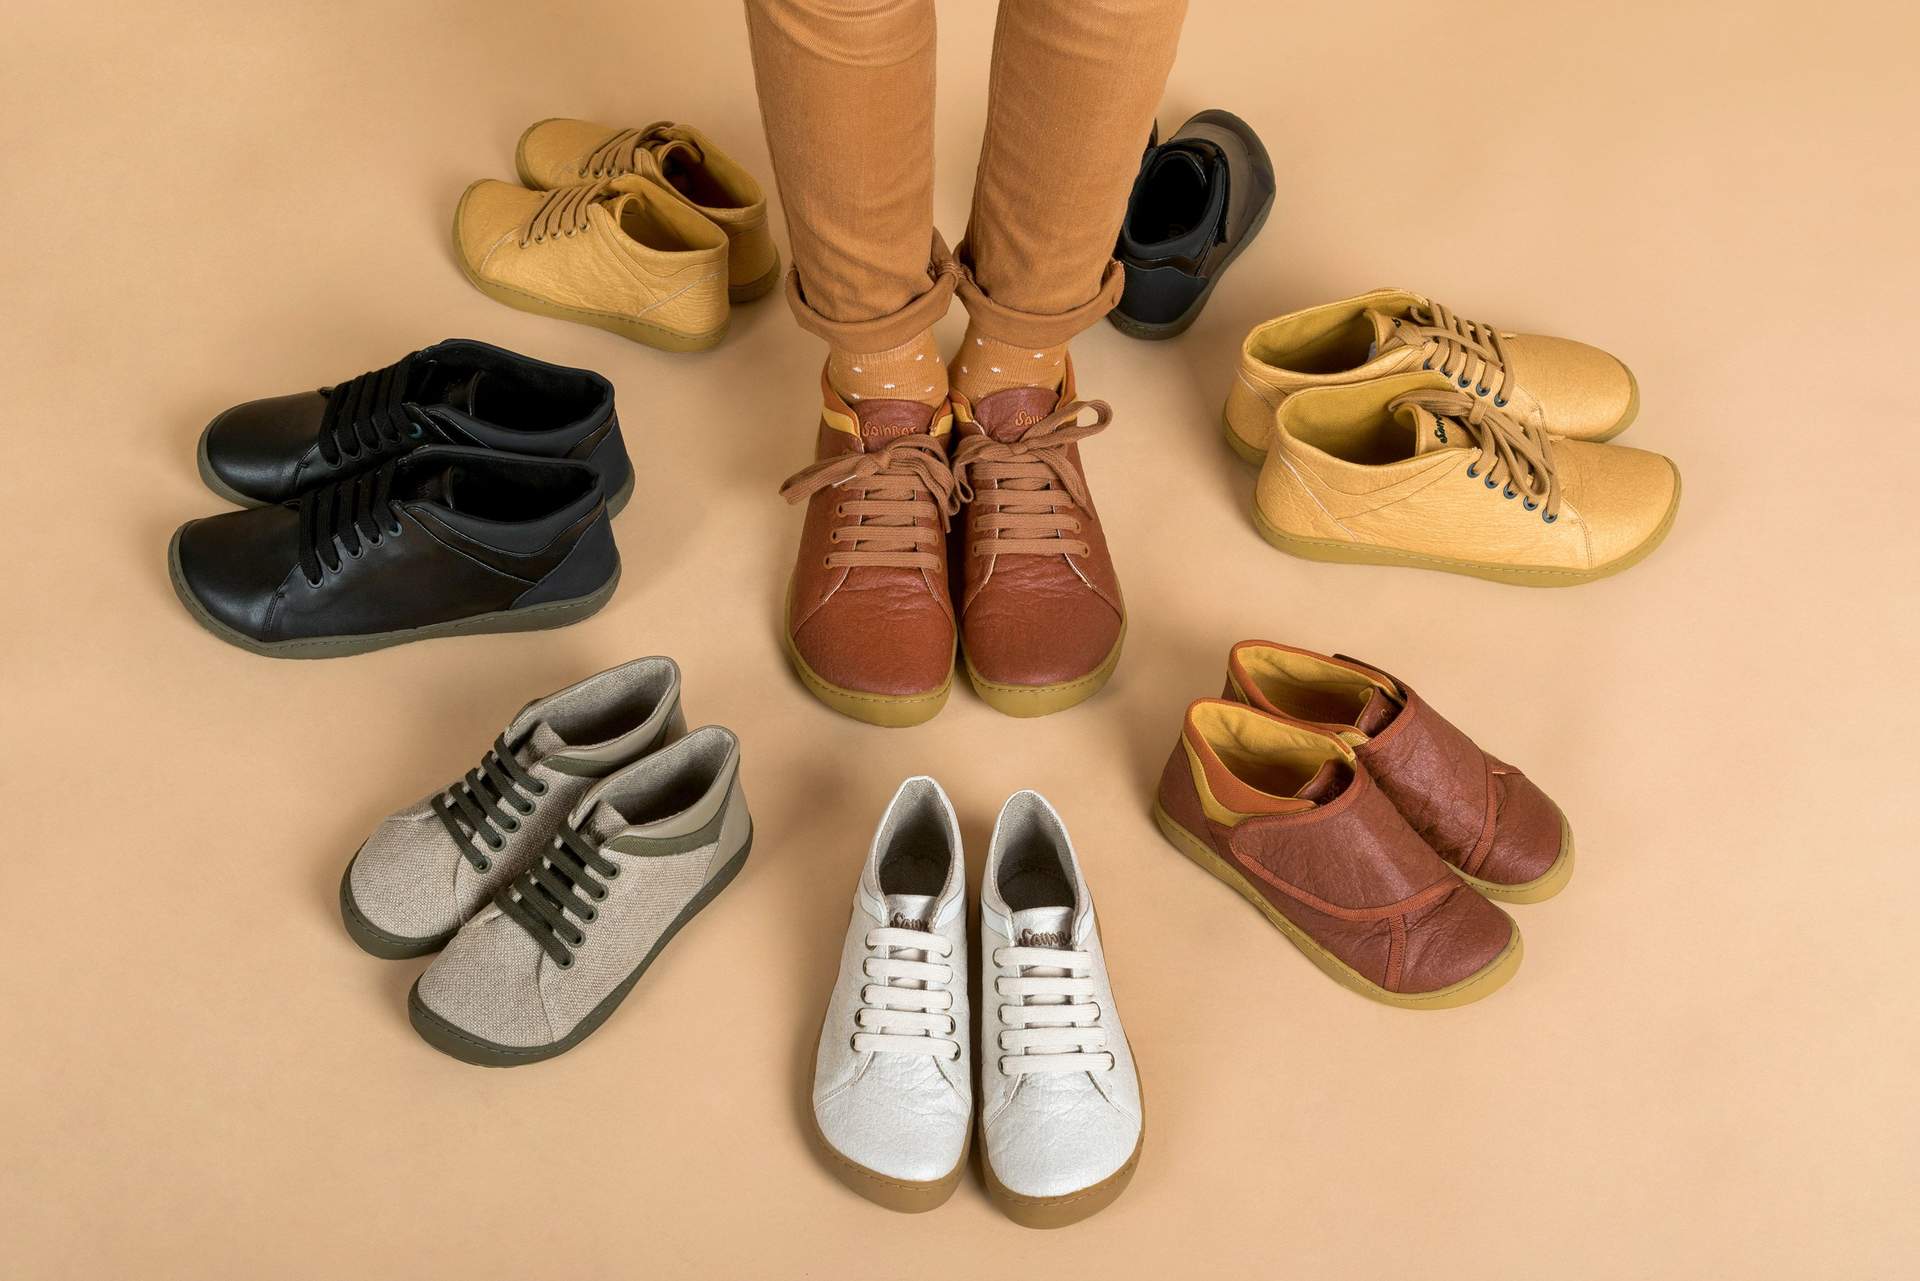 Calzado Barefoot y las principales características del calzado respetuoso  con el desarrollo del pie - Empresa 